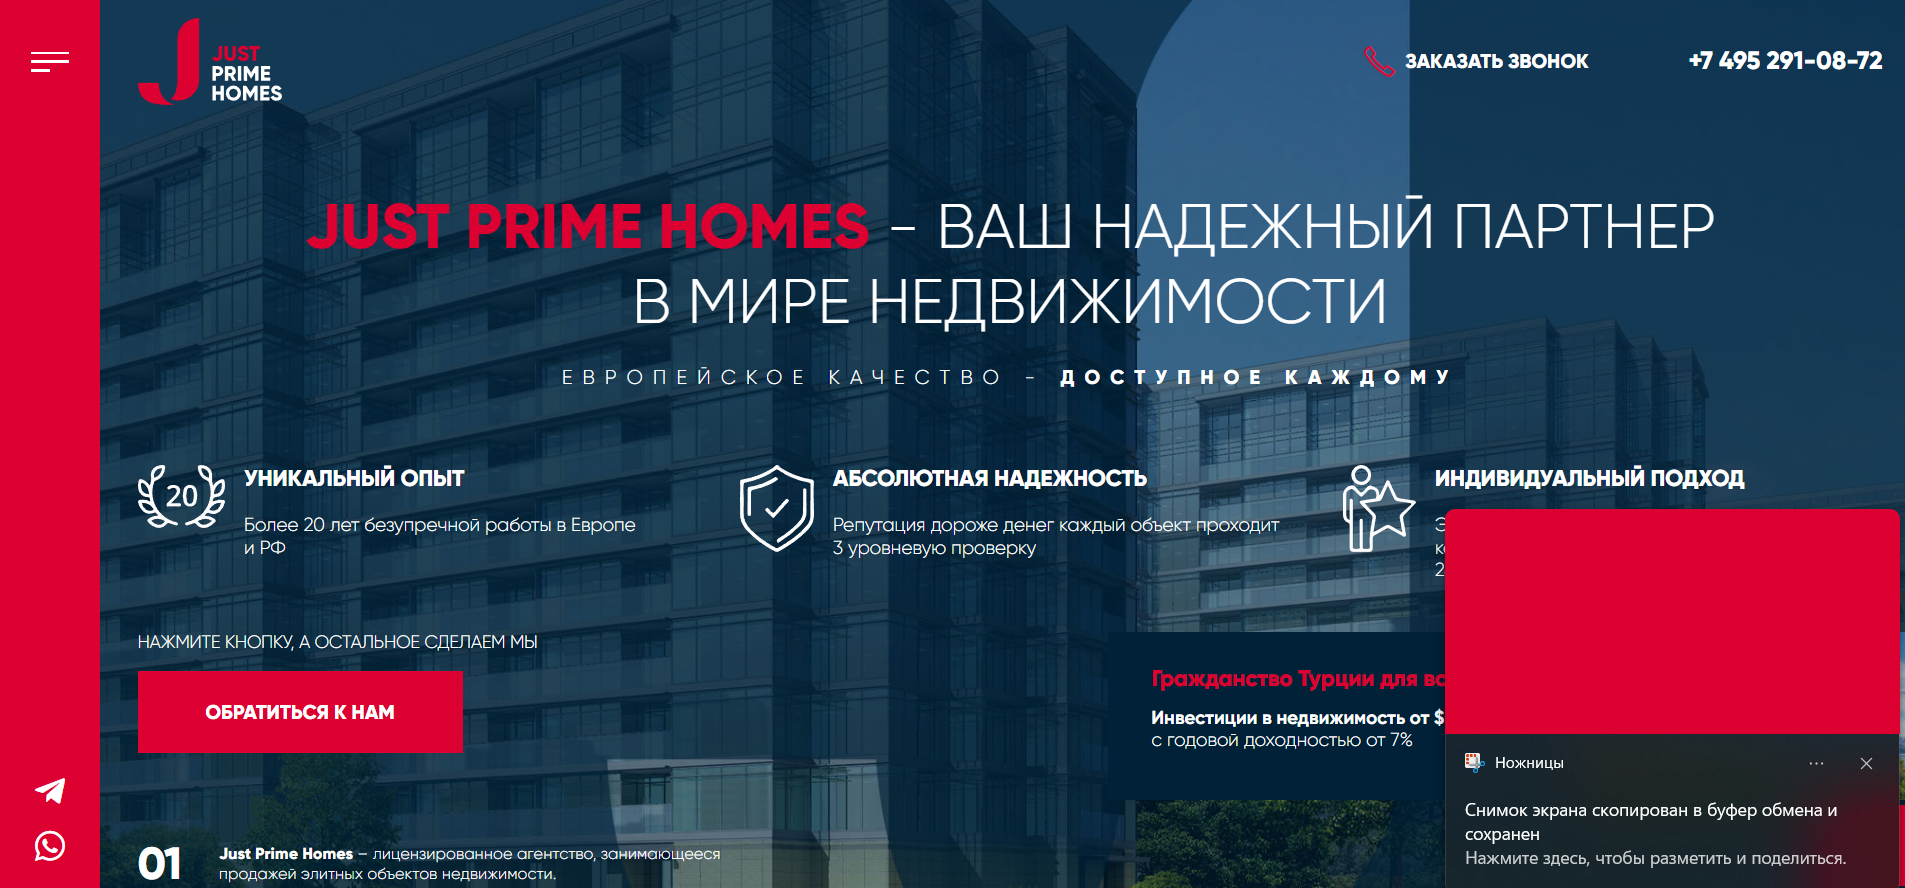 Неудачный опыт с агентством недвижимости Just Prime Homes в Москве